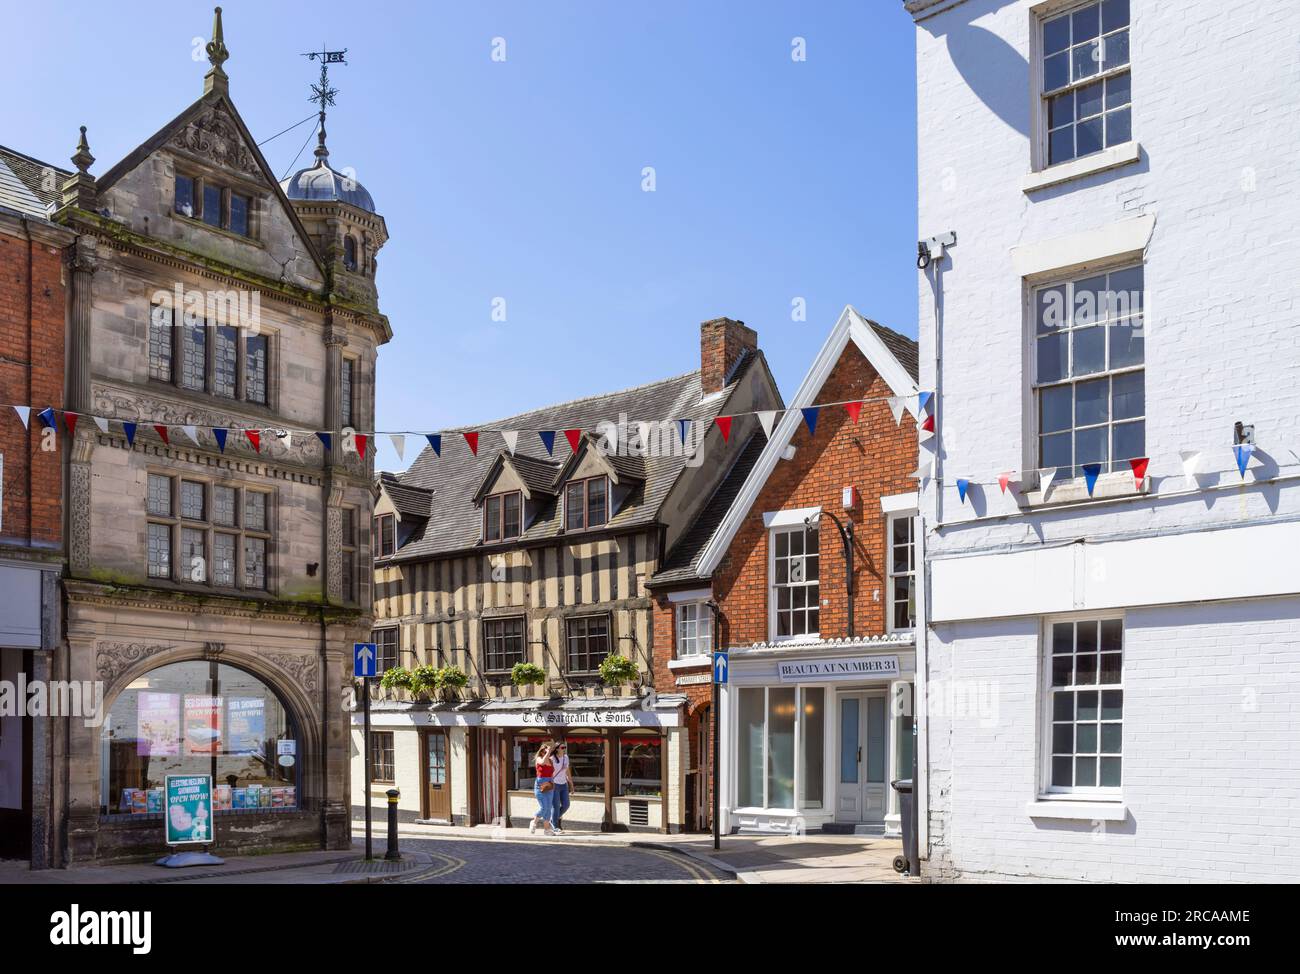 Uttoxeter marché place sur Market Street vieux bâtiments historiques Uttoxeter centre ville est Staffordshire West Midlands Angleterre Royaume-Uni GB Europe Banque D'Images